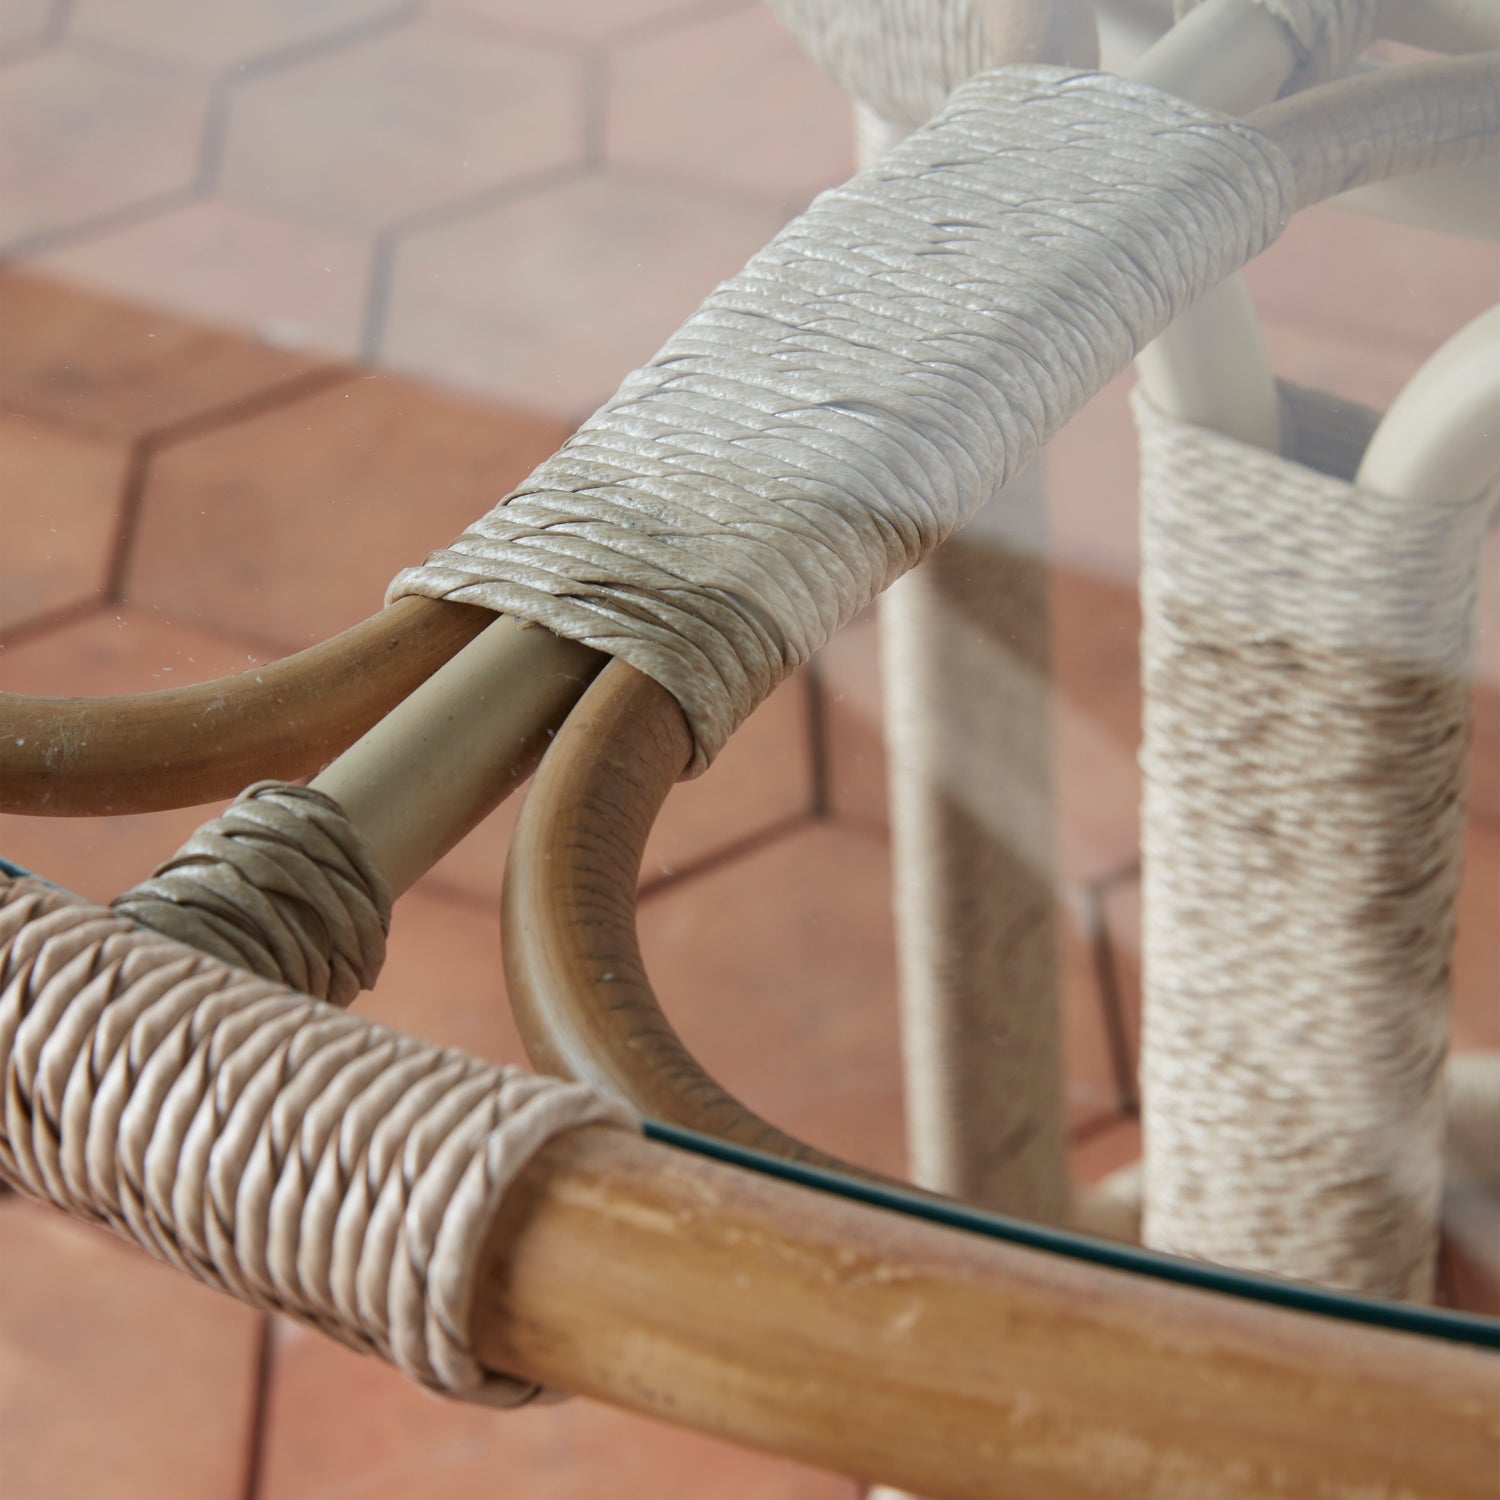 glen ellen indoor/outdoor dining table detail